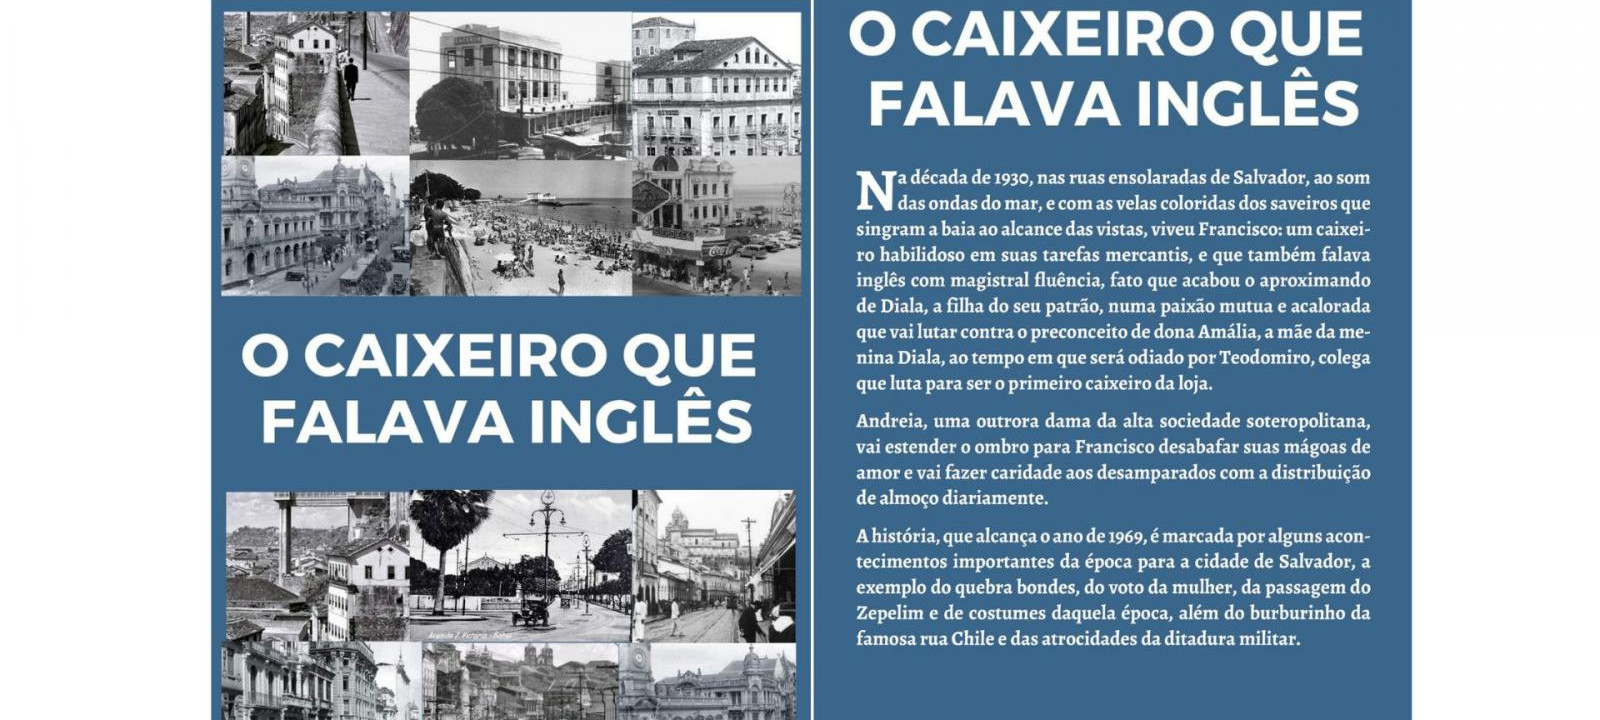 Auditor-Fiscal aposentado, Luís Bacelar lança novo livro em Salvador 